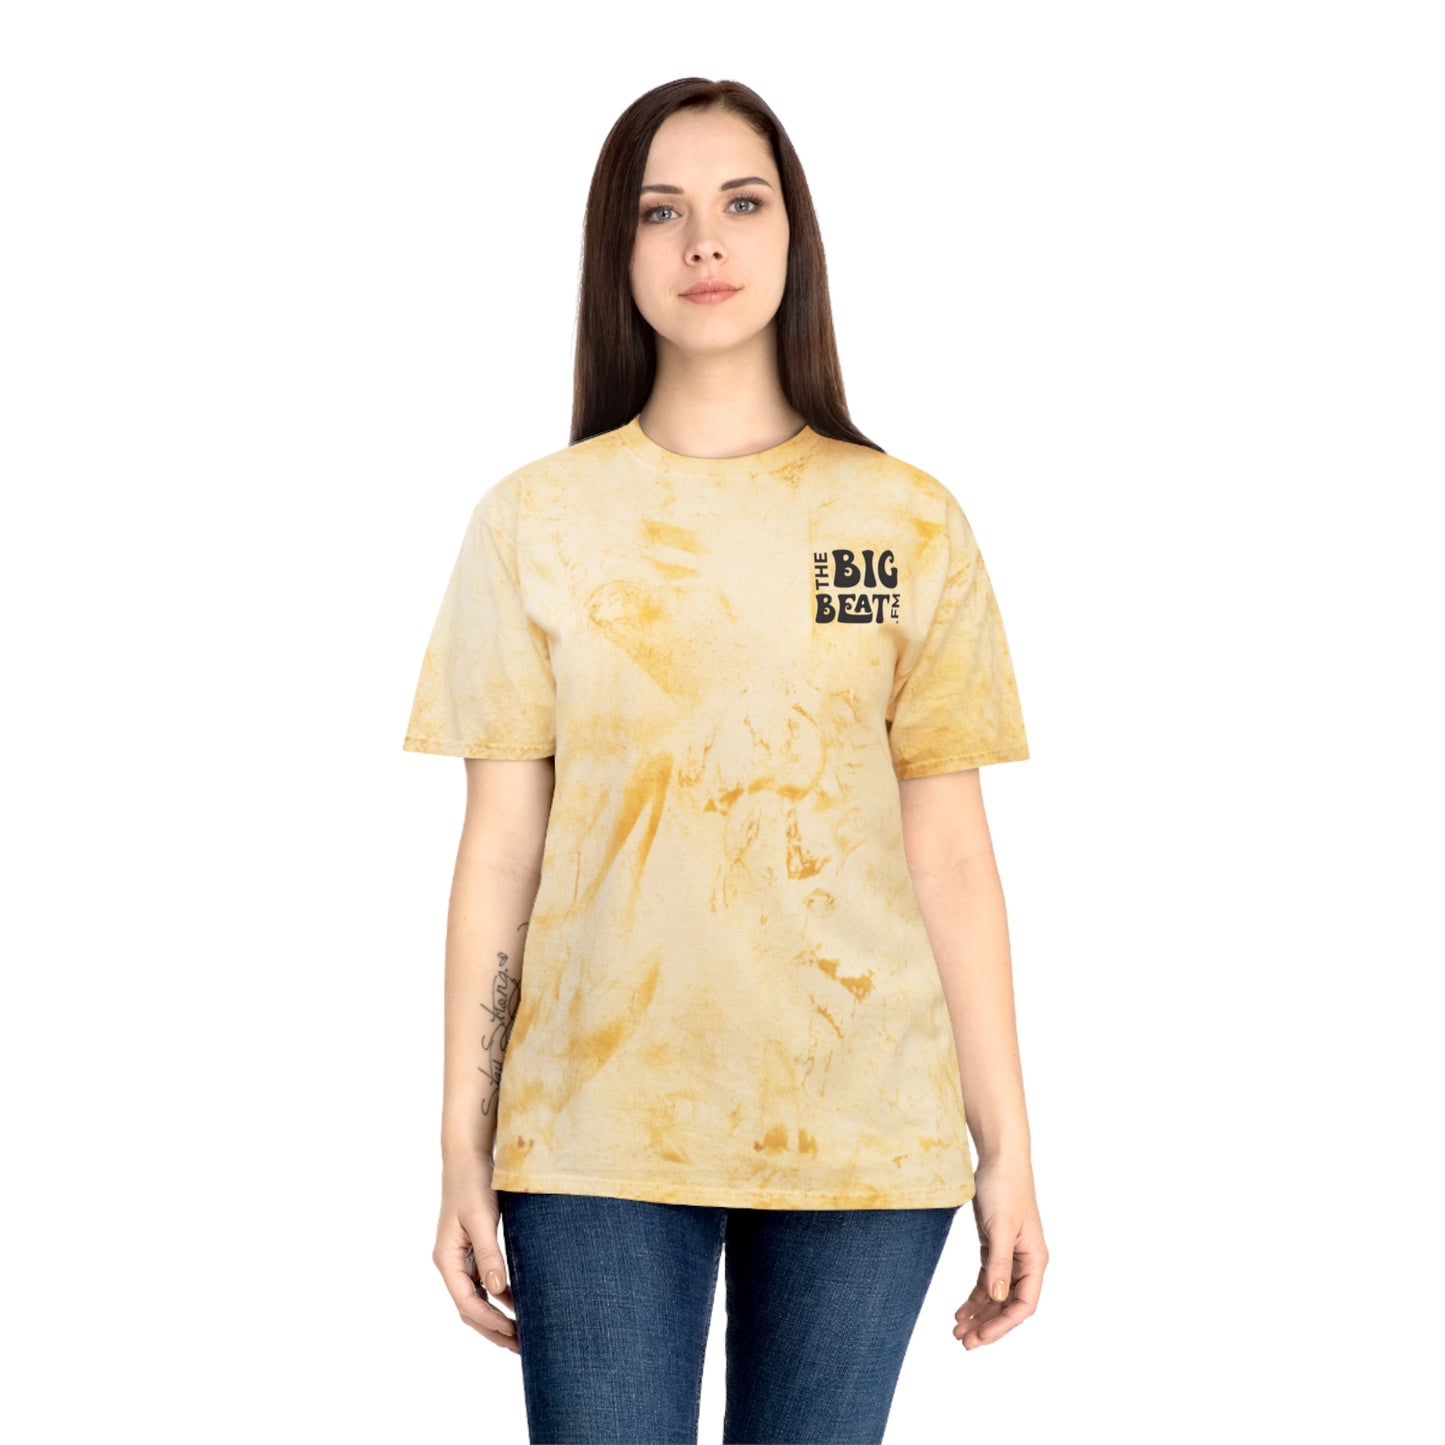 The Big Bea tFM Color Blast T-Shirt